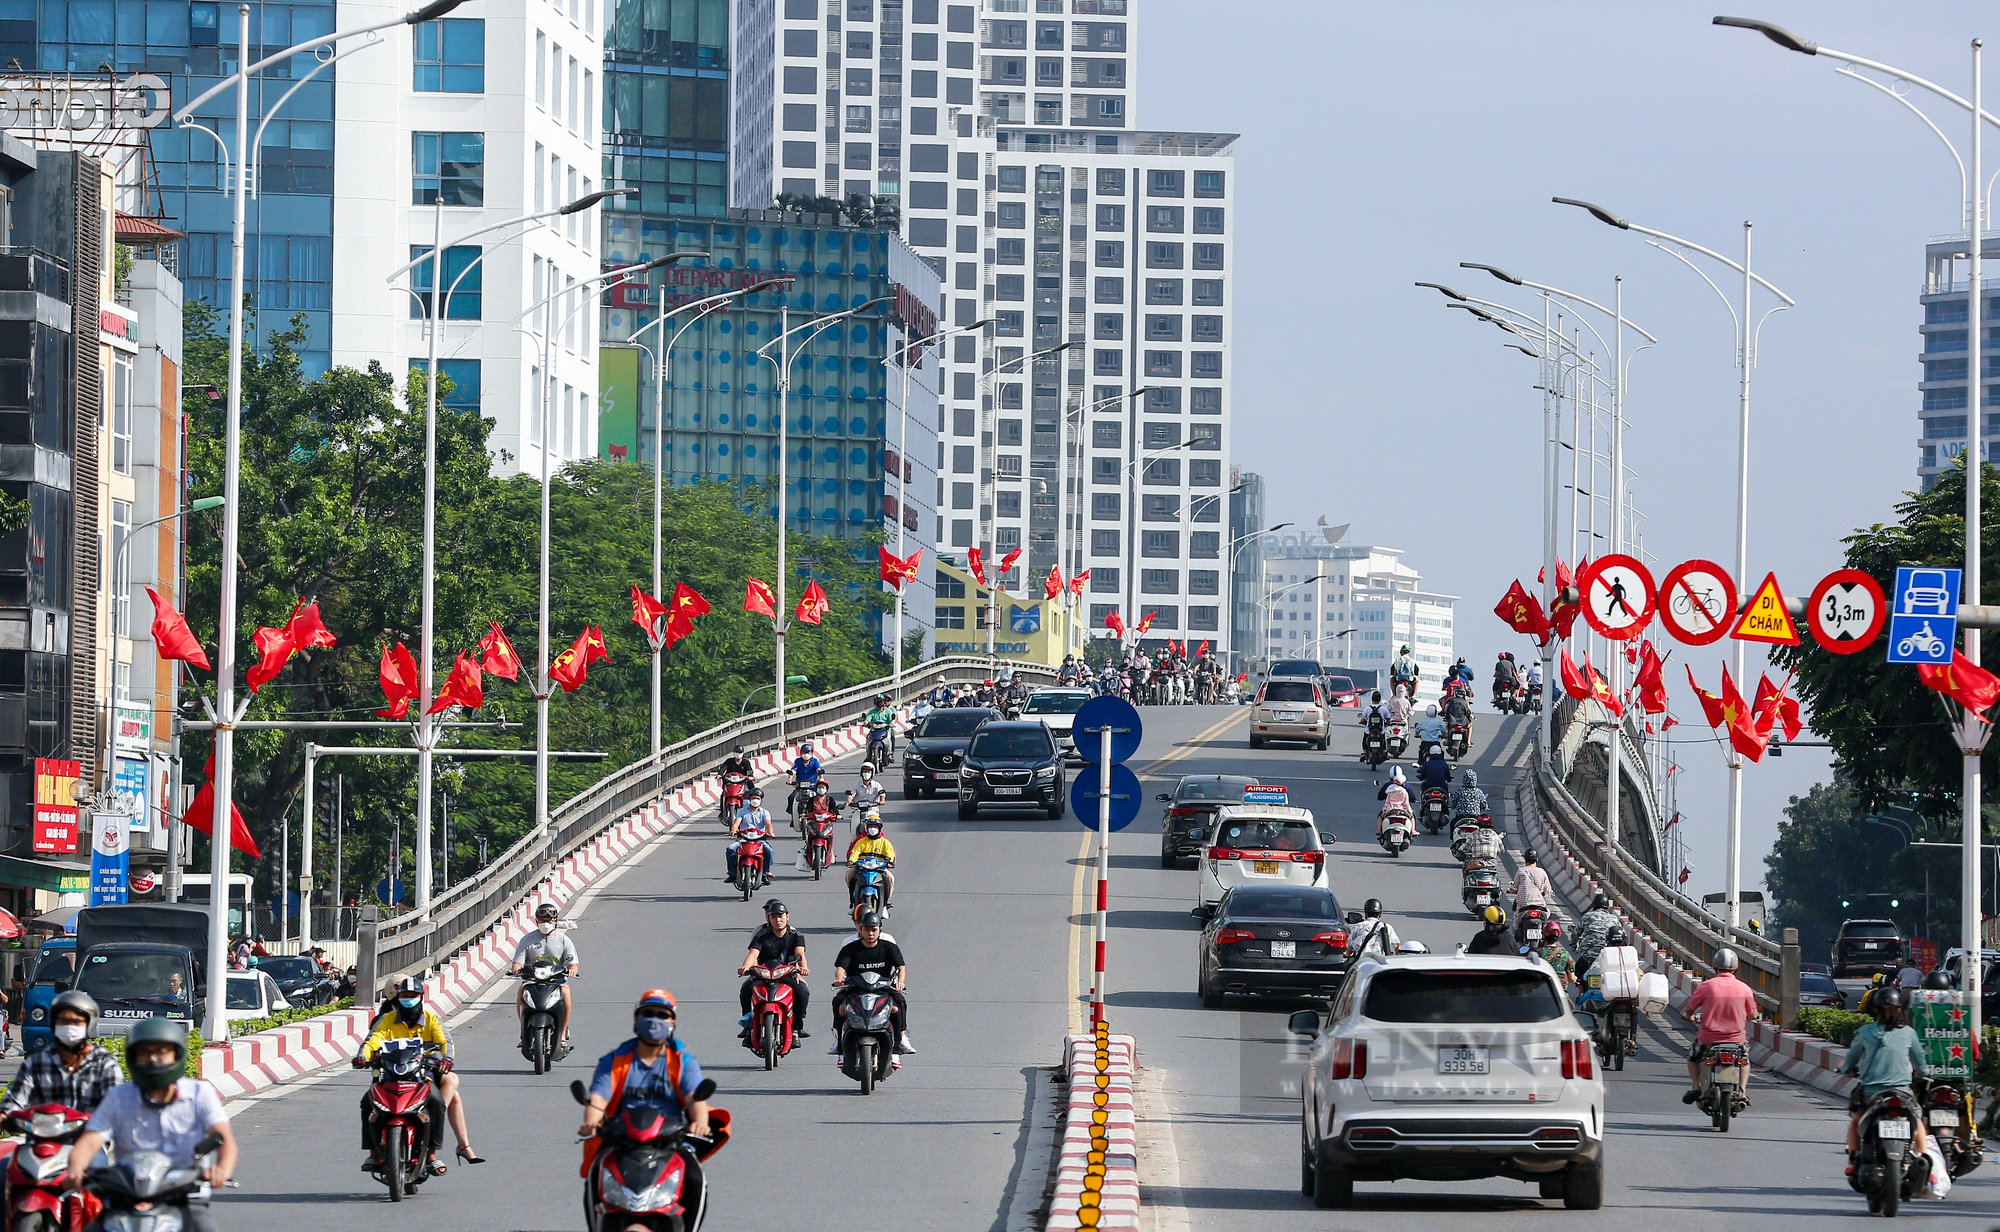 Đường phố Hà Nội rực rỡ chào mừng kỷ niệm 68 năm Giải phóng Thủ đô  - Ảnh 1.